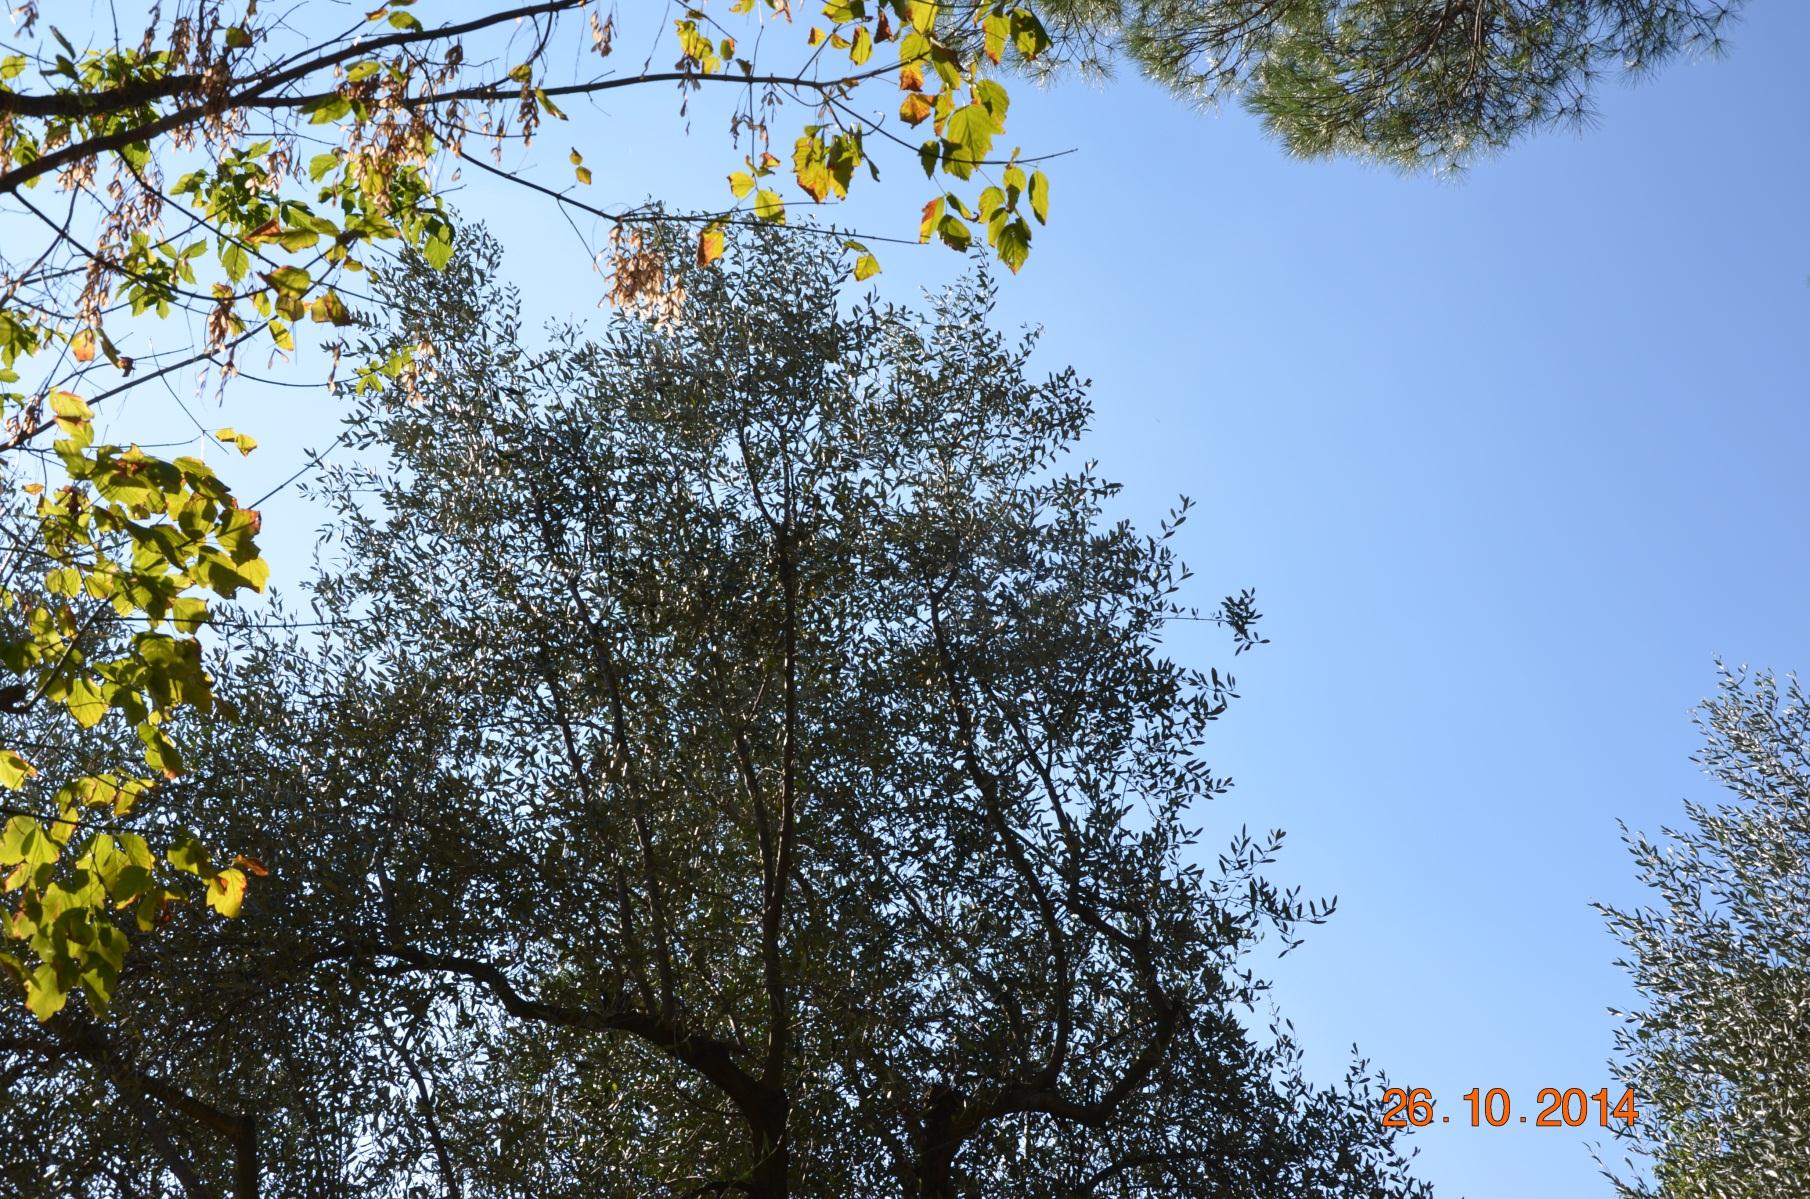 Dettaglio della chioma. Si notano gli altri alberi in competizione.